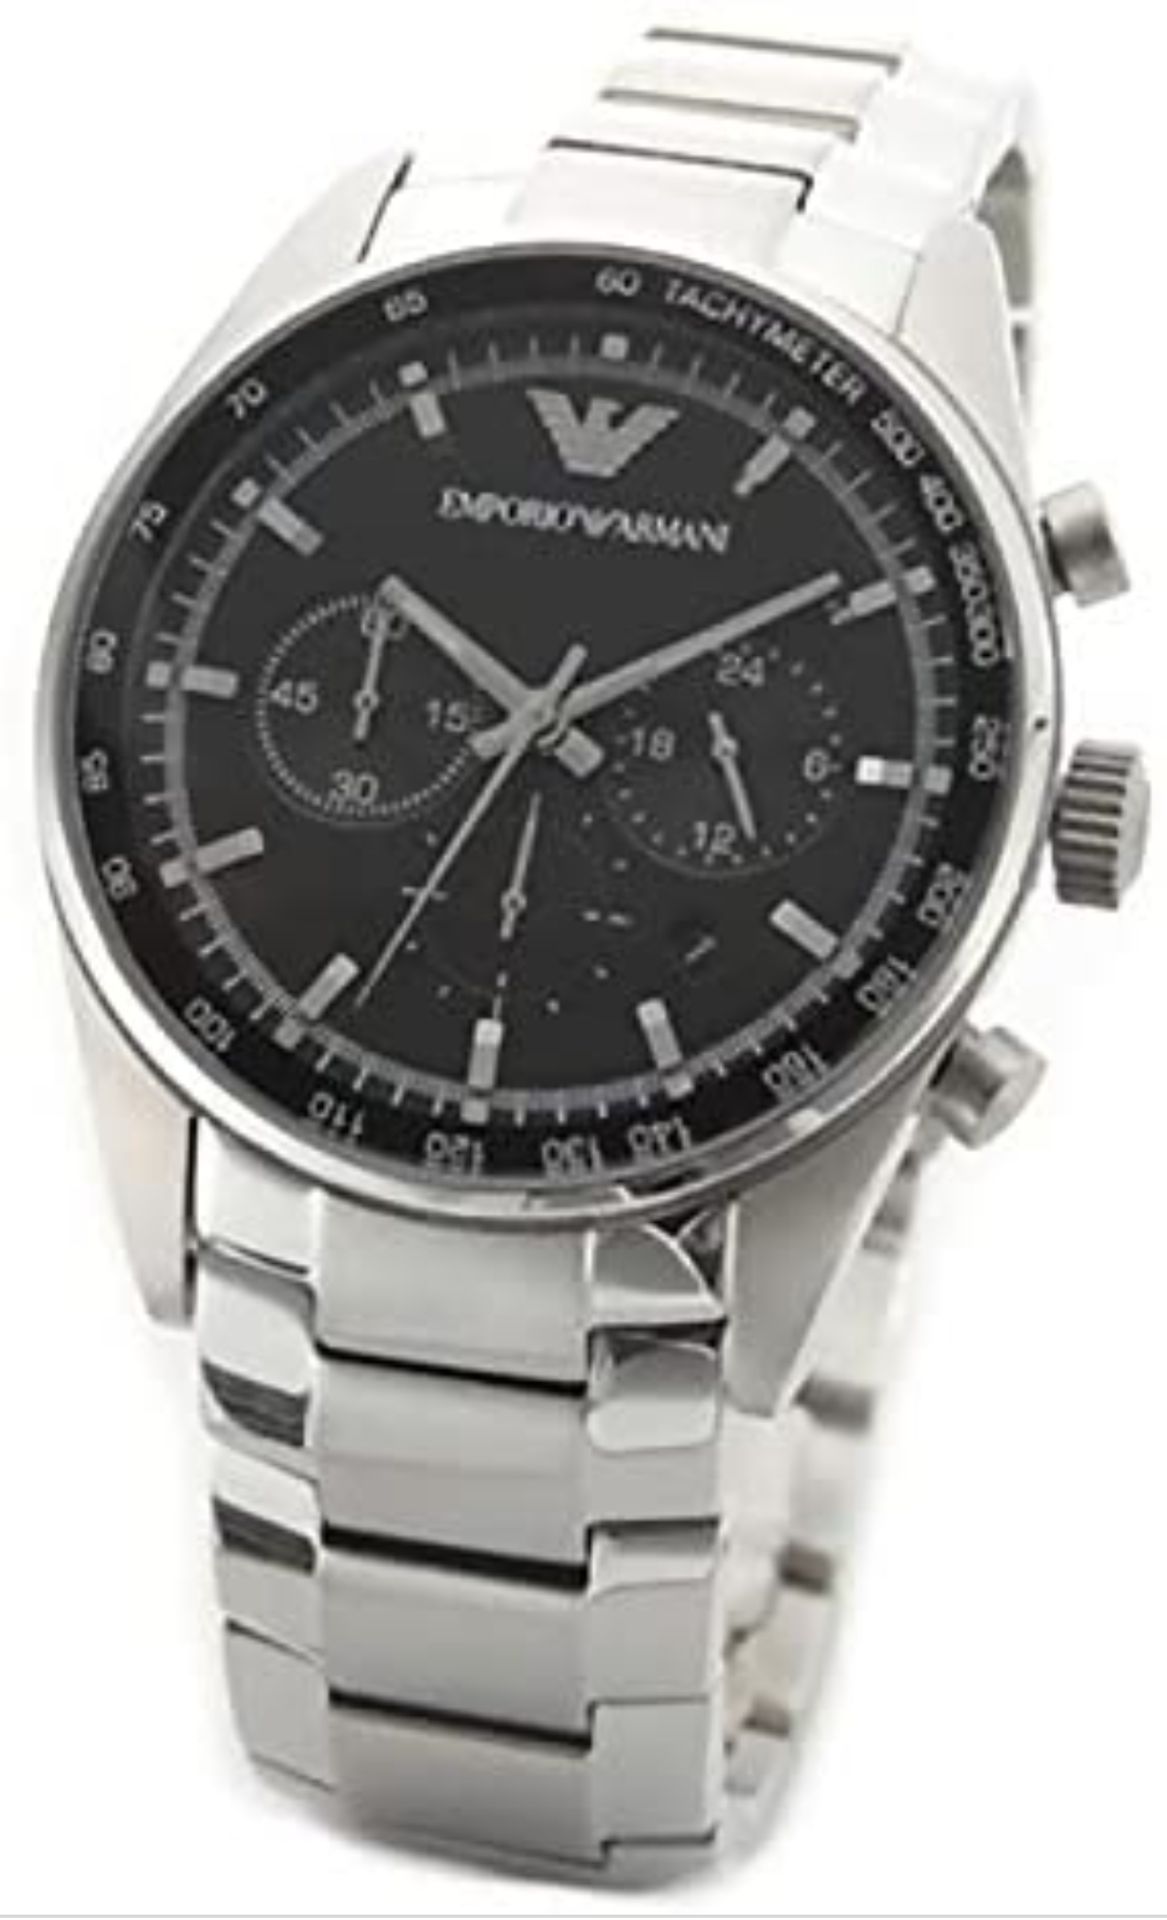 Emporio Armani AR5980 Men's Sportivo Black Dial Silver Bracelet Quartz Chronograph Watch - Image 3 of 8